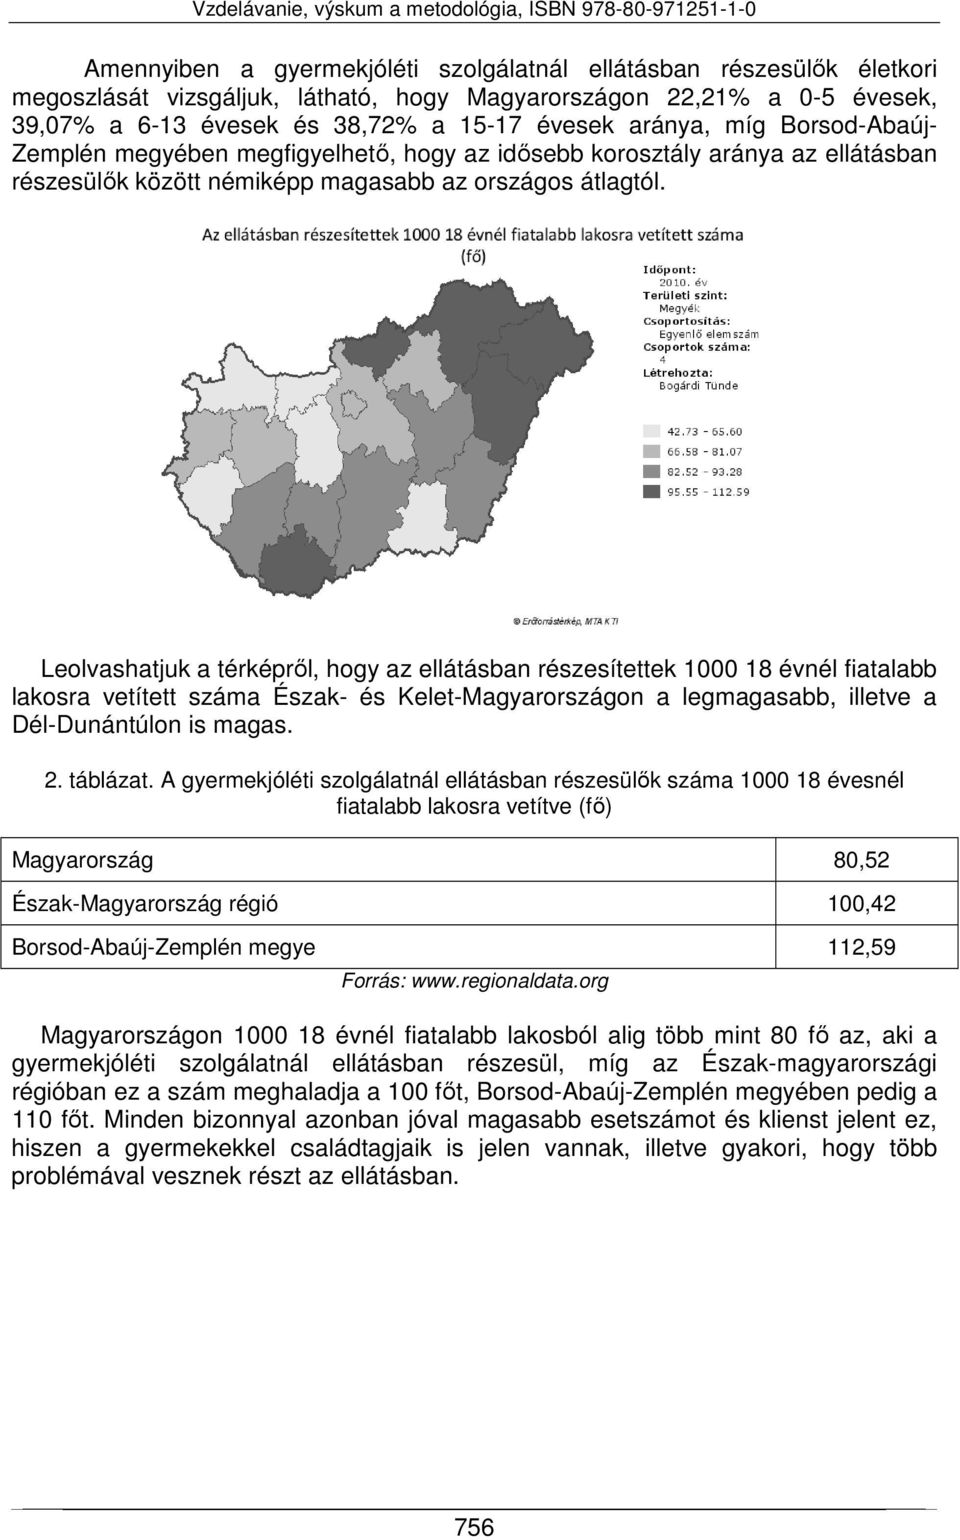 Leolvashatjuk a térképről, hogy az ellátásban részesítettek 1000 18 évnél fiatalabb lakosra vetített száma Észak- és Kelet-Magyarországon a legmagasabb, illetve a Dél-Dunántúlon is magas. 2. táblázat.